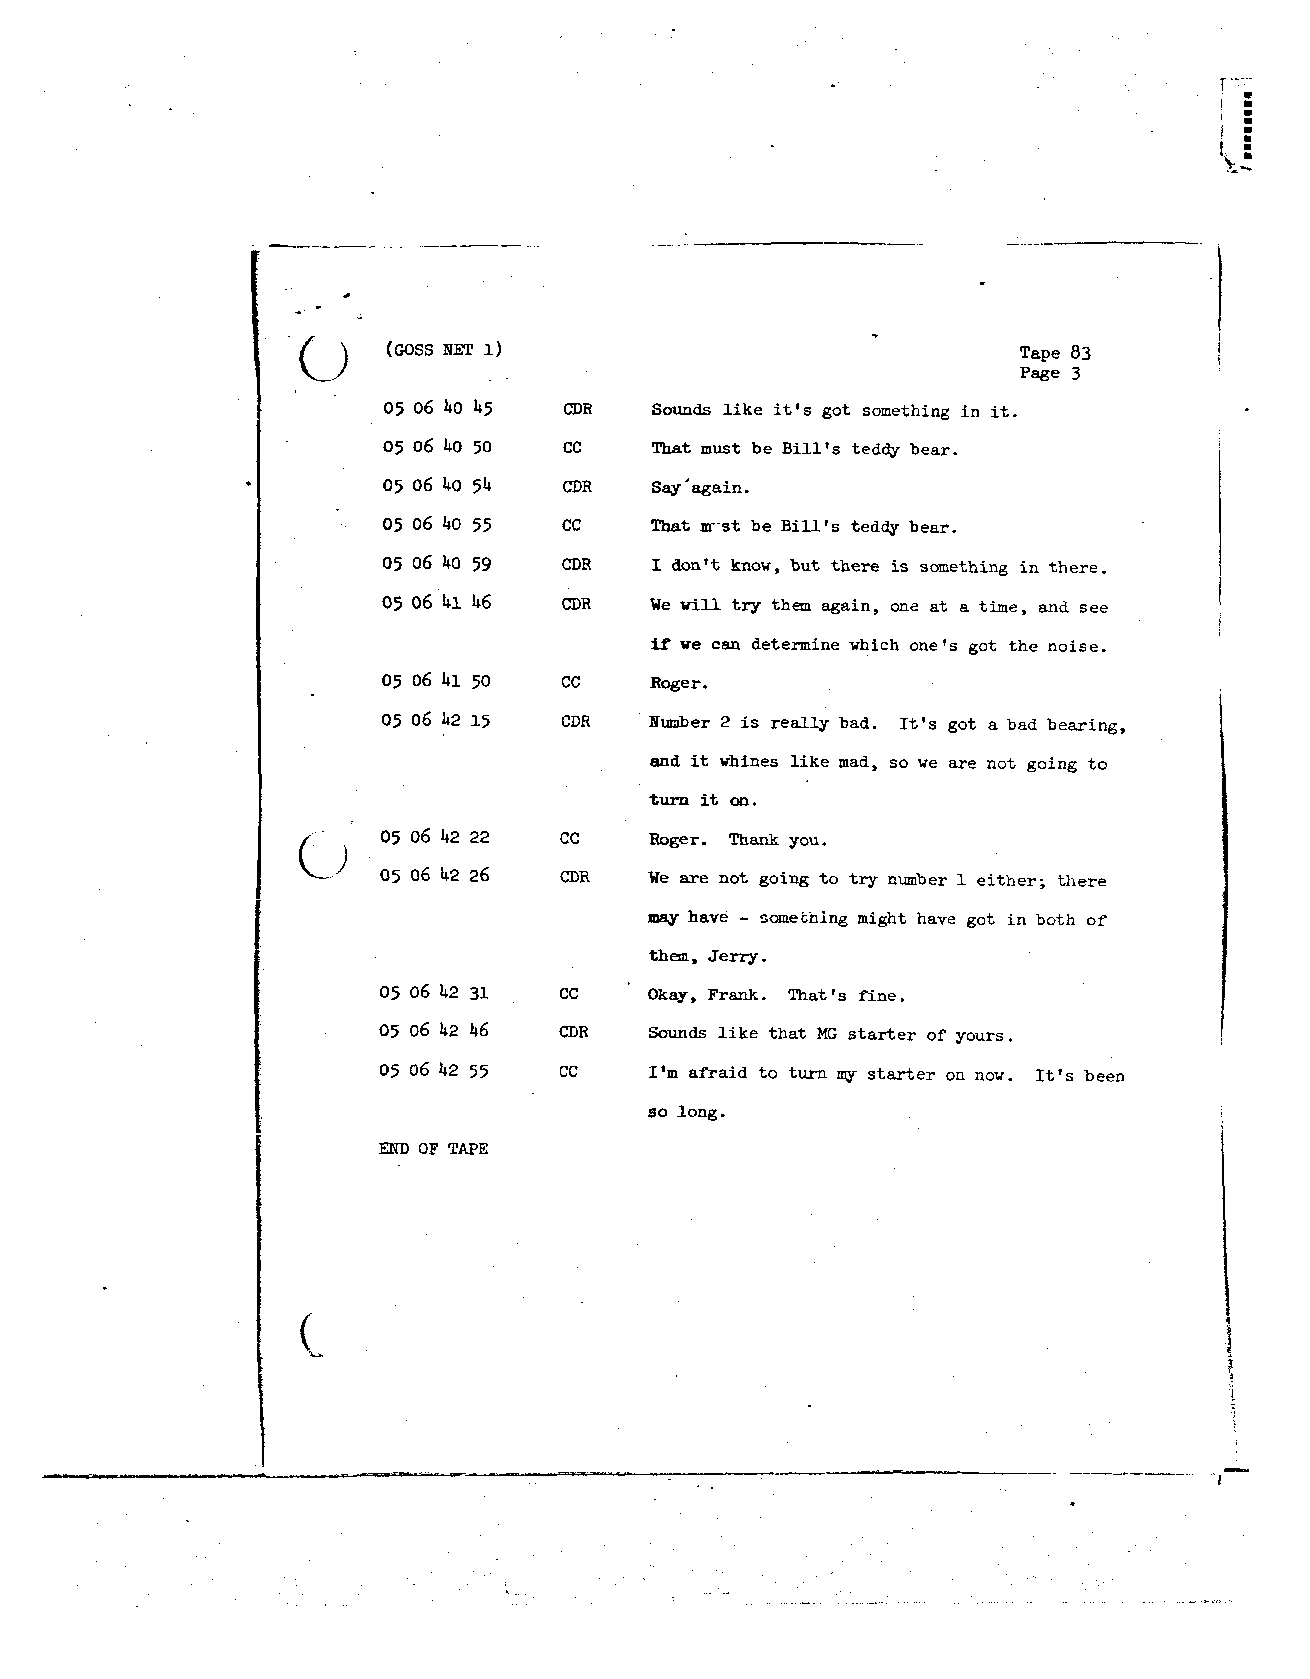 Page 686 of Apollo 8’s original transcript